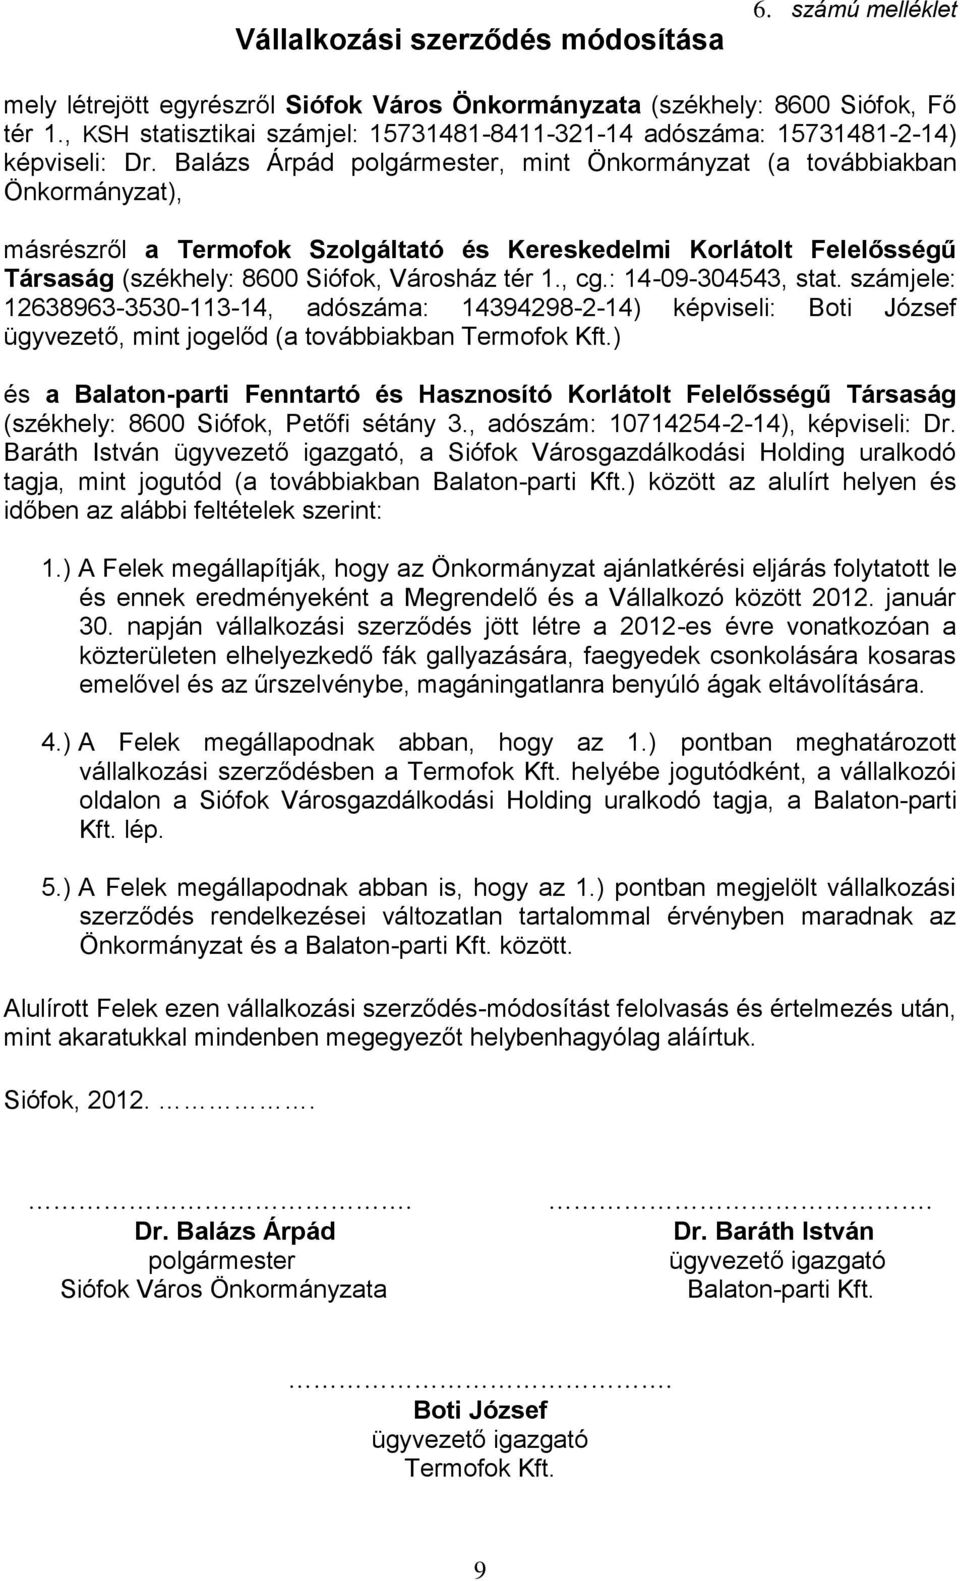 Városgazdálkodási Holding uralkodó 1.) A Felek megállapítják, hogy az Önkormányzat ajánlatkérési eljárás folytatott le és ennek eredményeként a Megrendelő és a Vállalkozó között 2012. január 30.